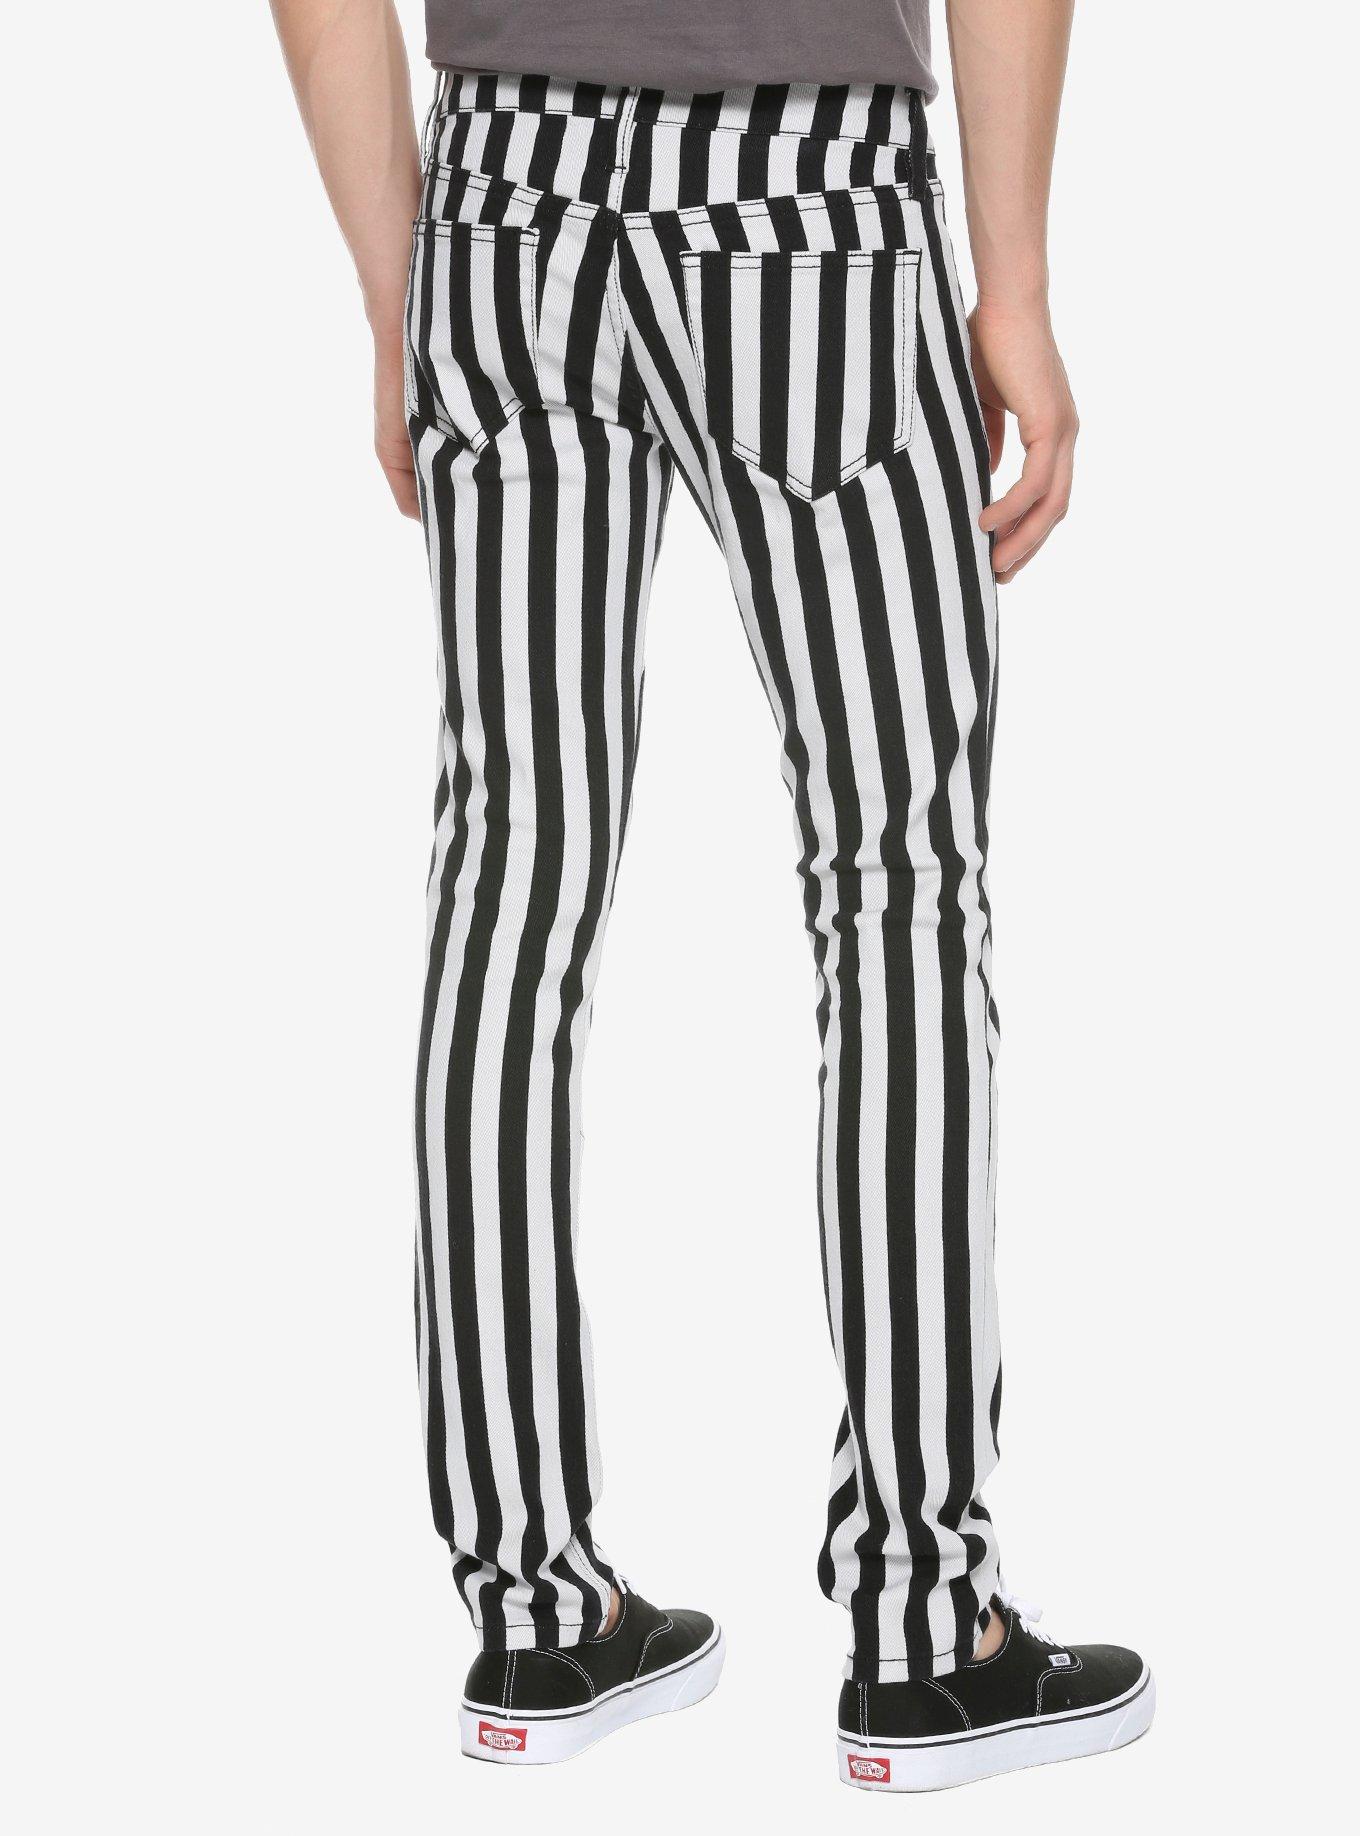 HT Denim Black & White Stripe Skinny Jeans, BLACK WHITE STRIPE, alternate